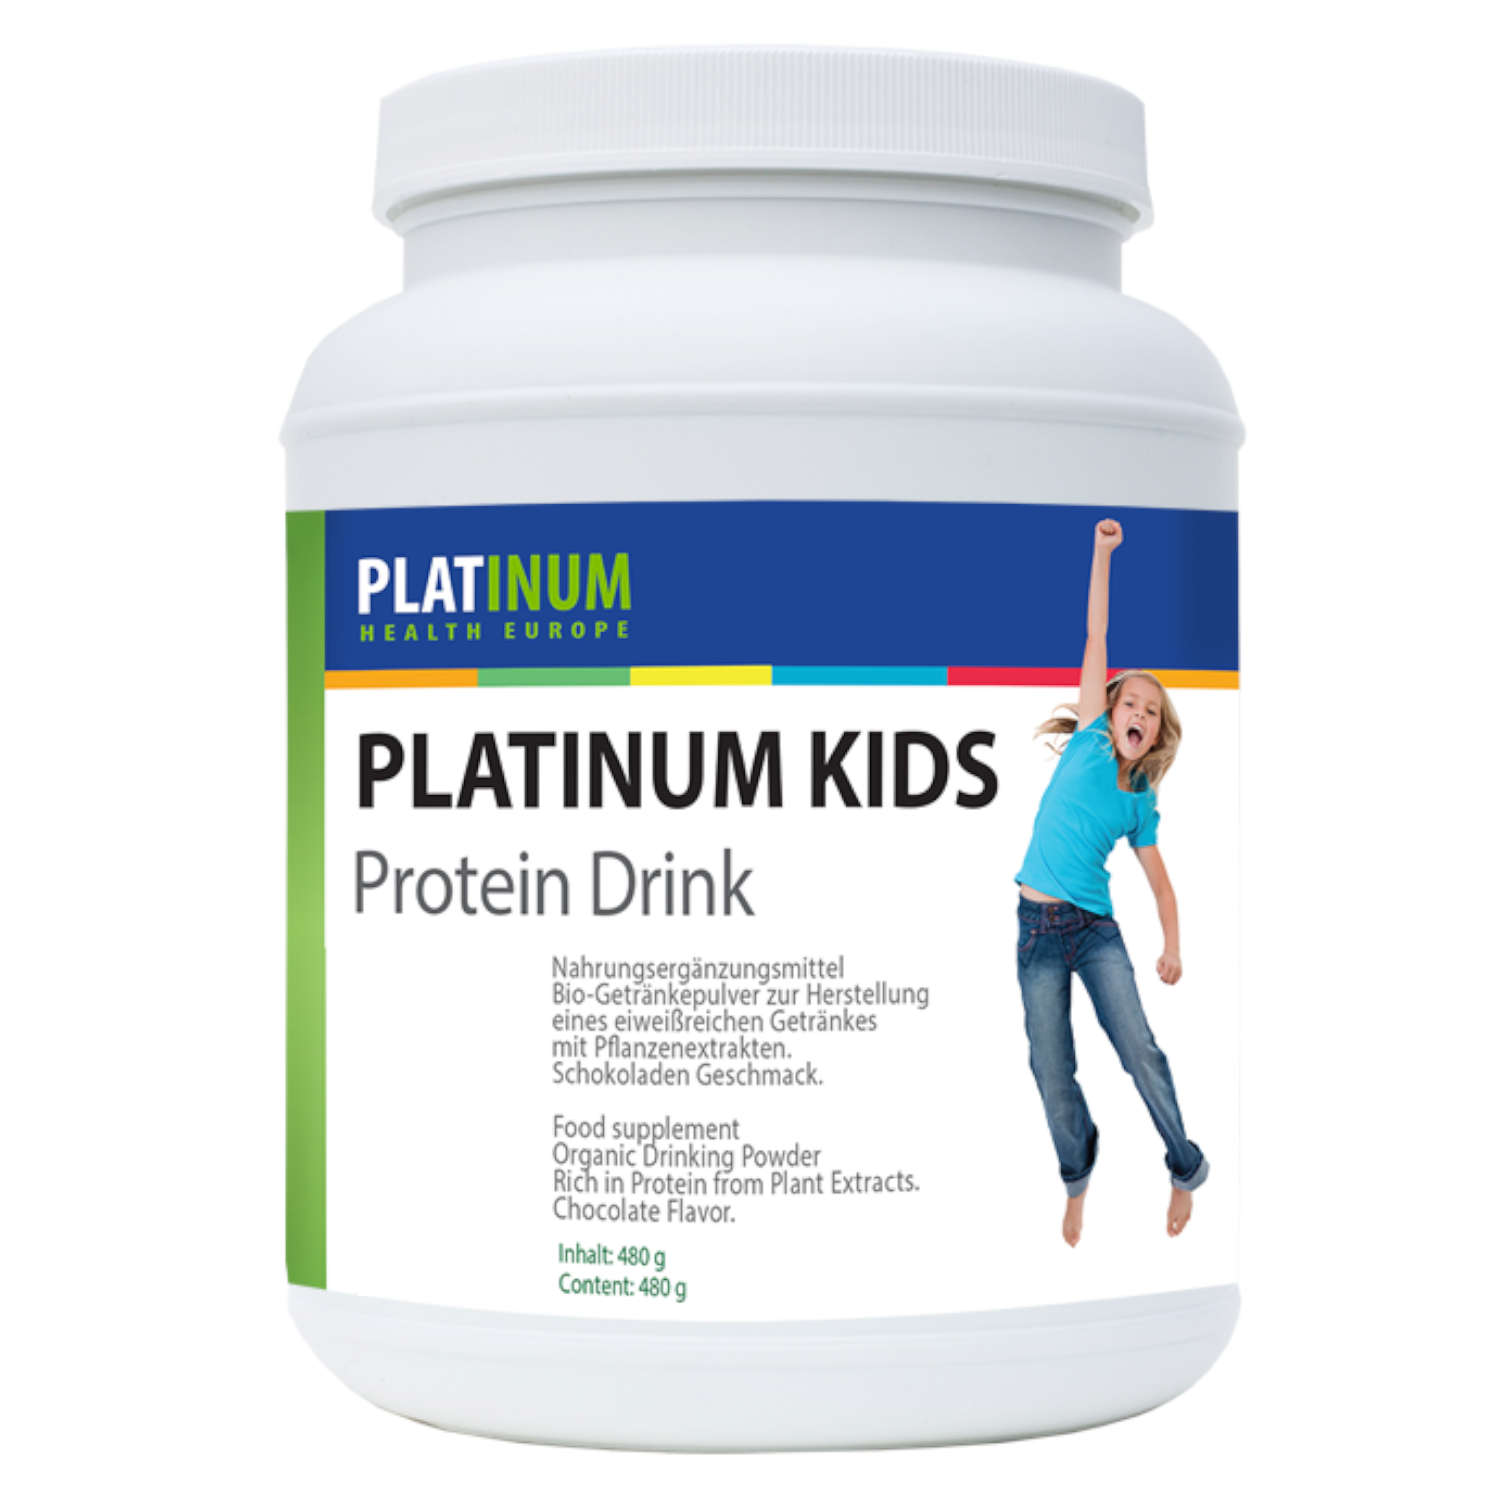 Kids Protein Drink von Platinum Health Europe - 480 g